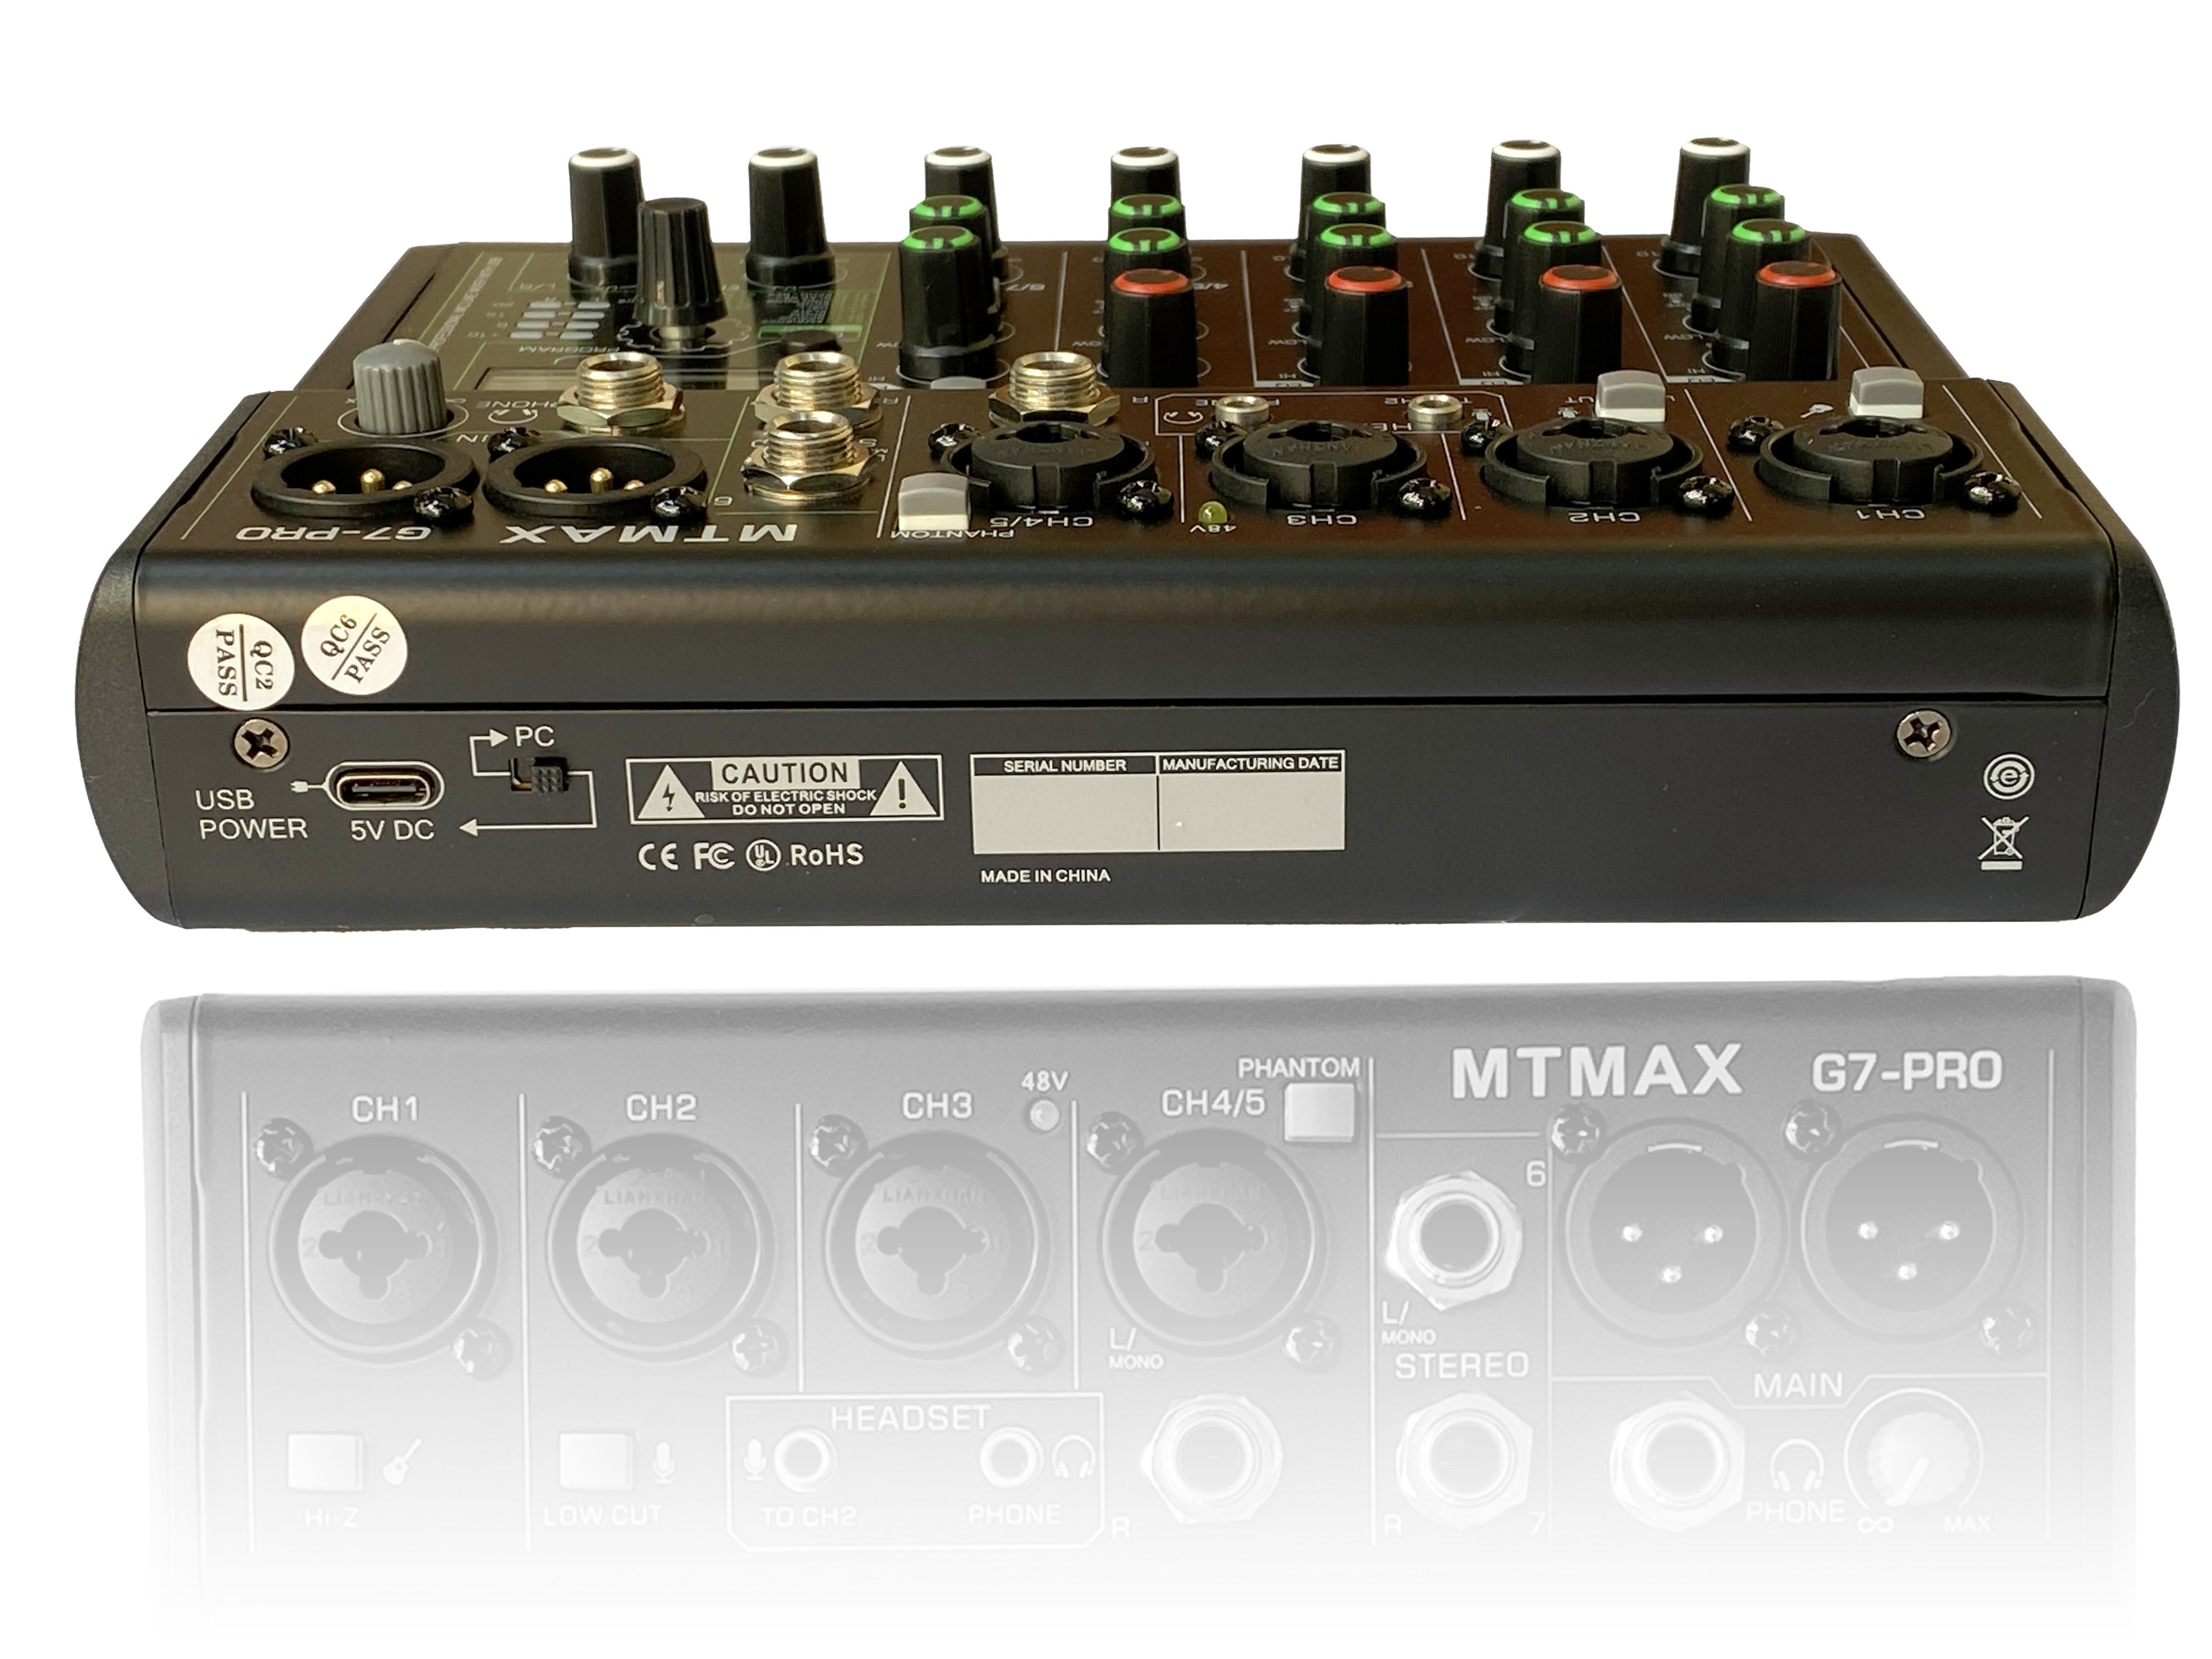 Mixer G7 MTMAX bluetooth -Karaoke Loa Kéo - Hát Thu âm - 88 Hiệu ứng vang số hỗ trợ điều chỉnh âm thanh  Amply gia đình và hát thu âm livestream bảo hành 12 tháng hàng chính hãng